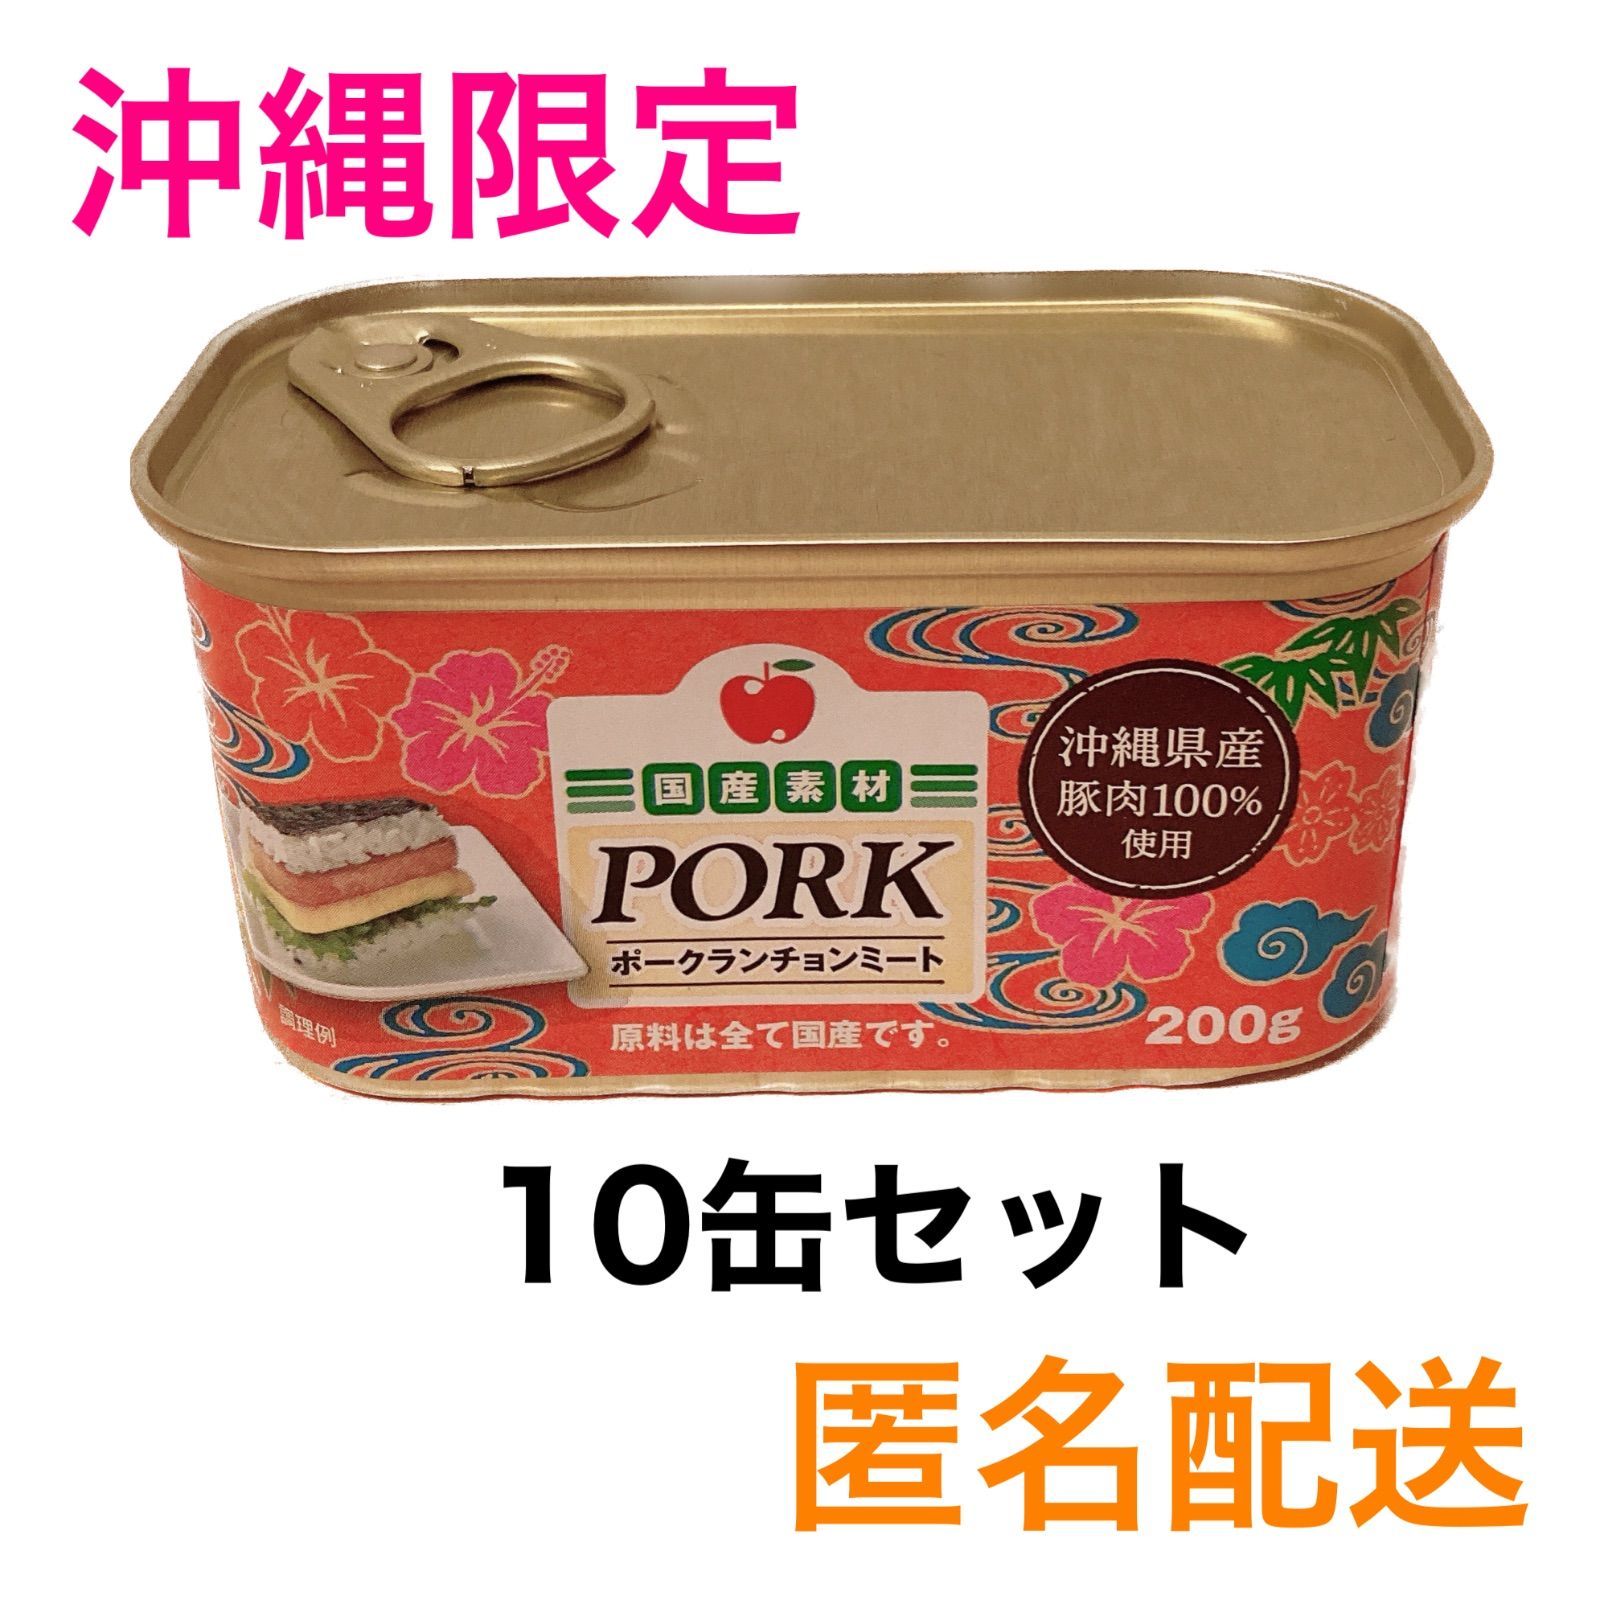 ポークランチョンミート 42缶 コープ沖縄限定 値下げしました。